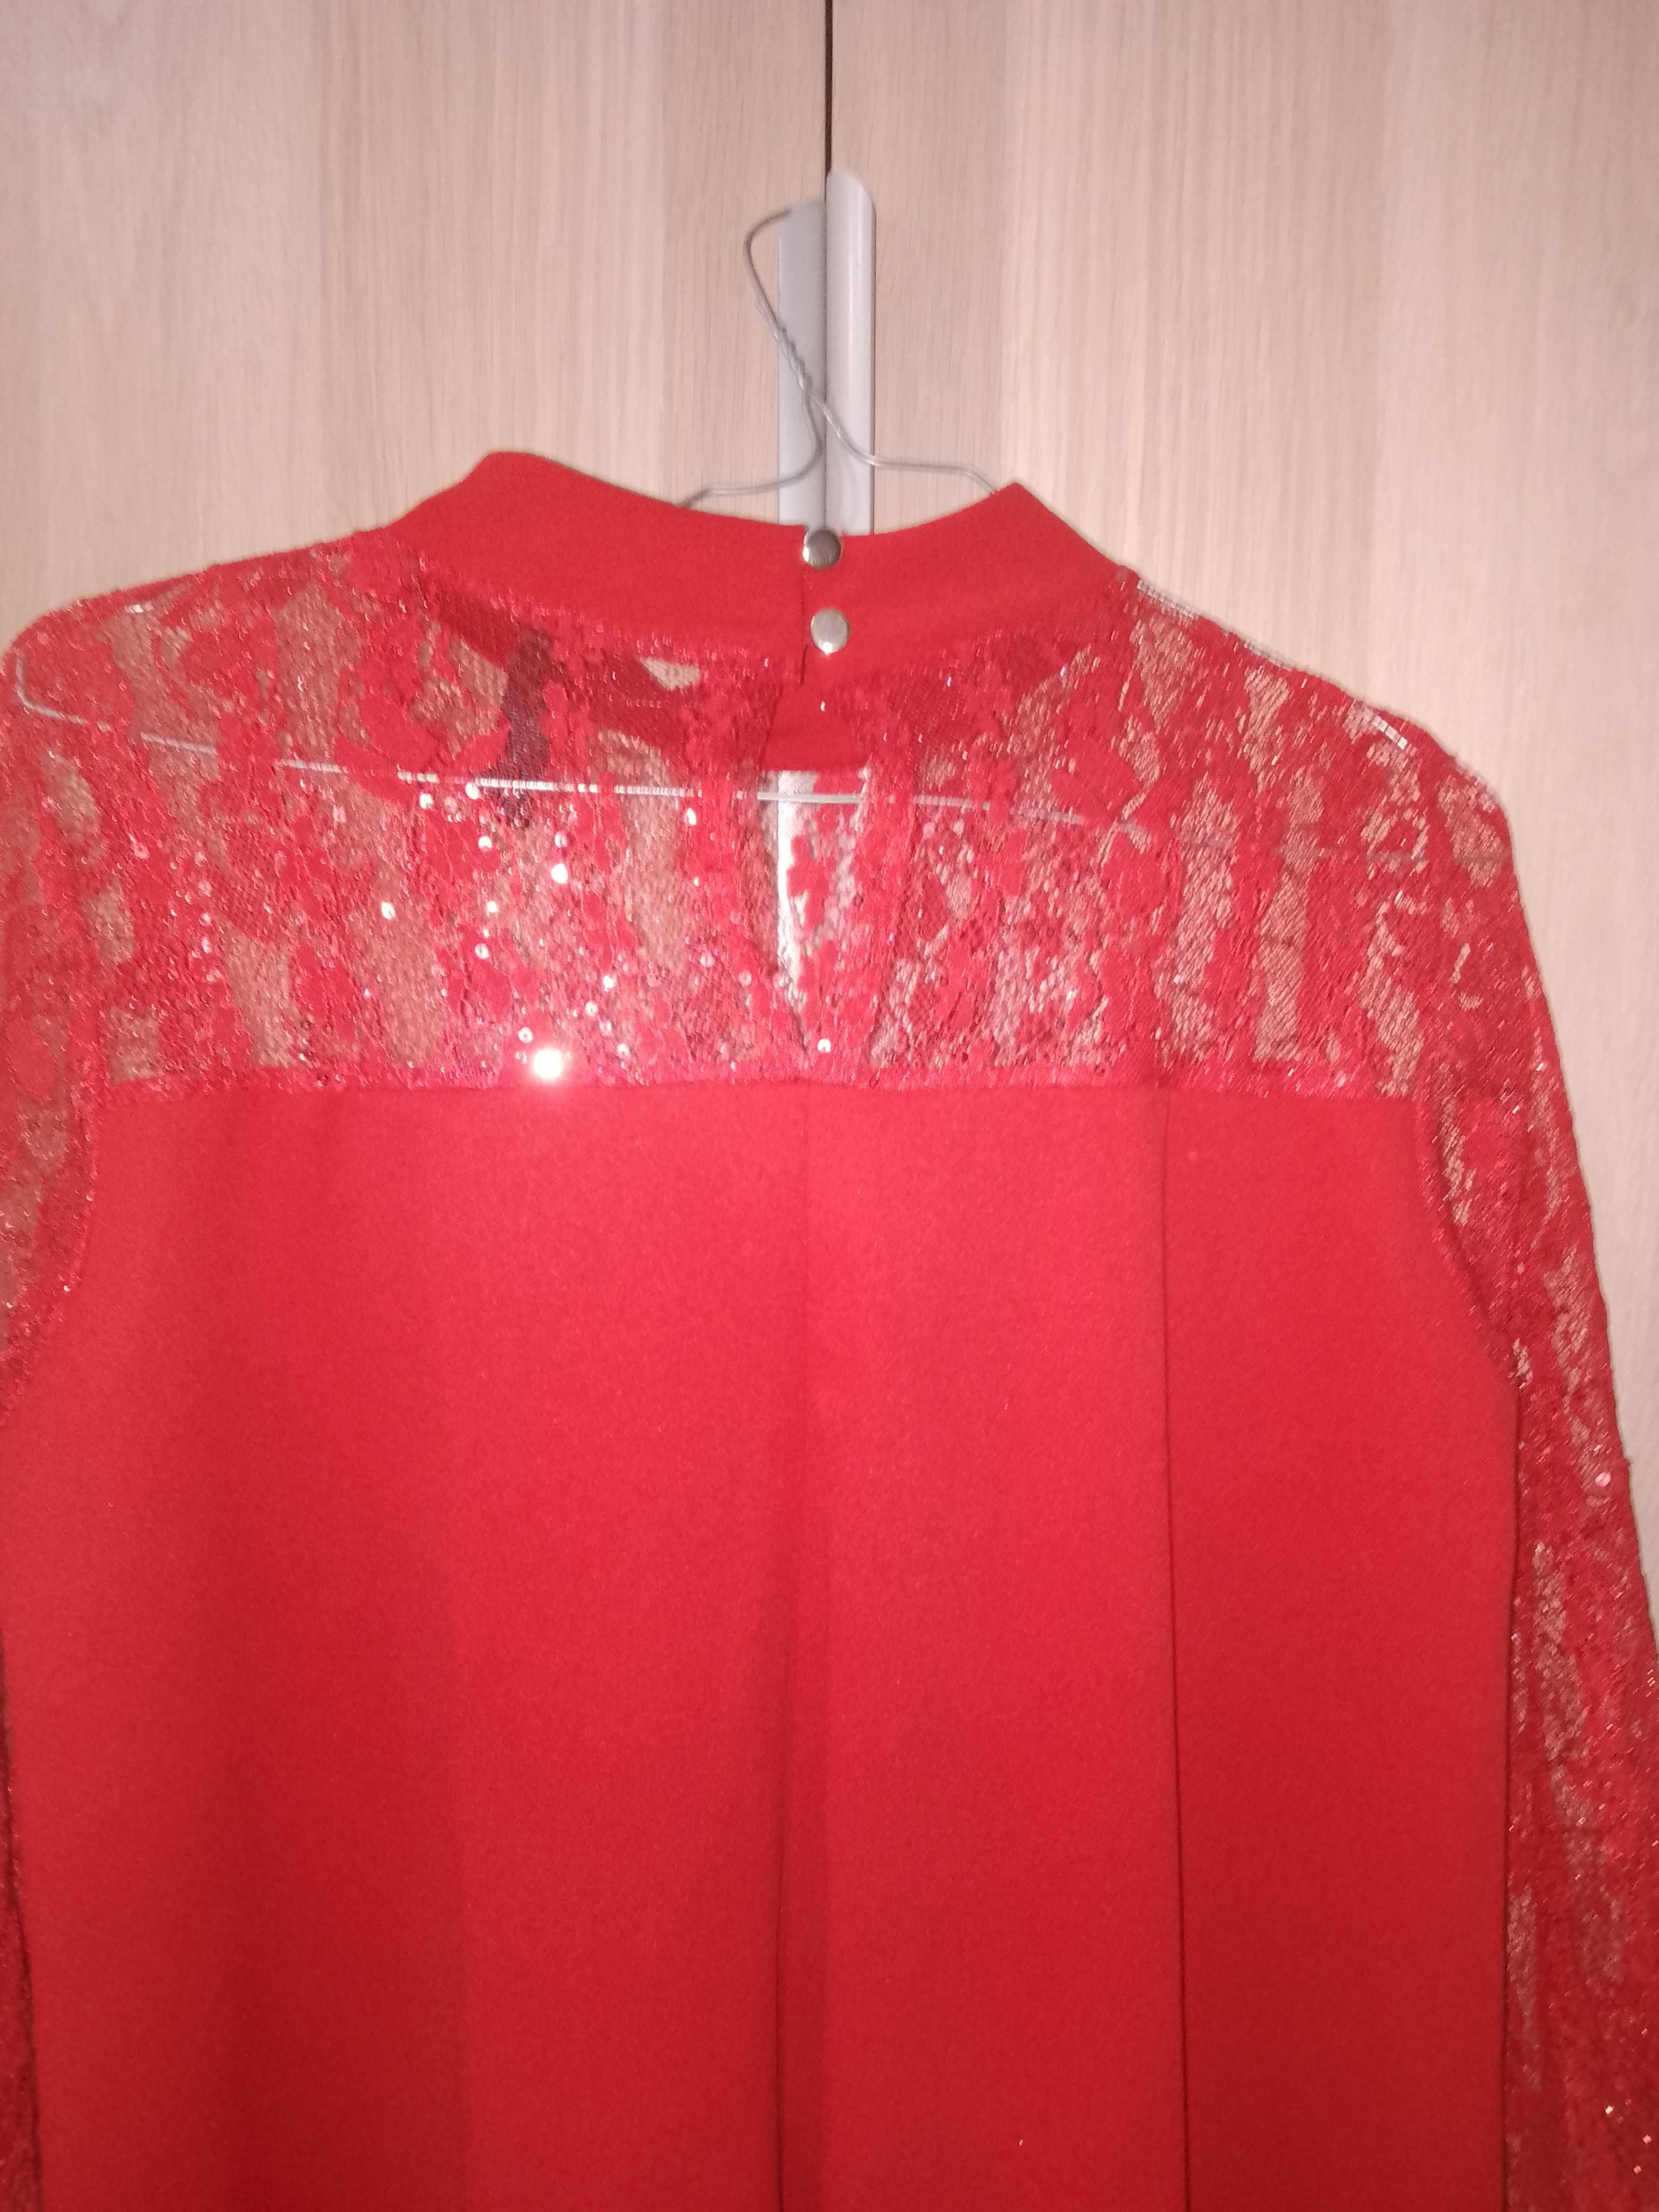 Vestido vermelho novo com etiqueta, para o Natal